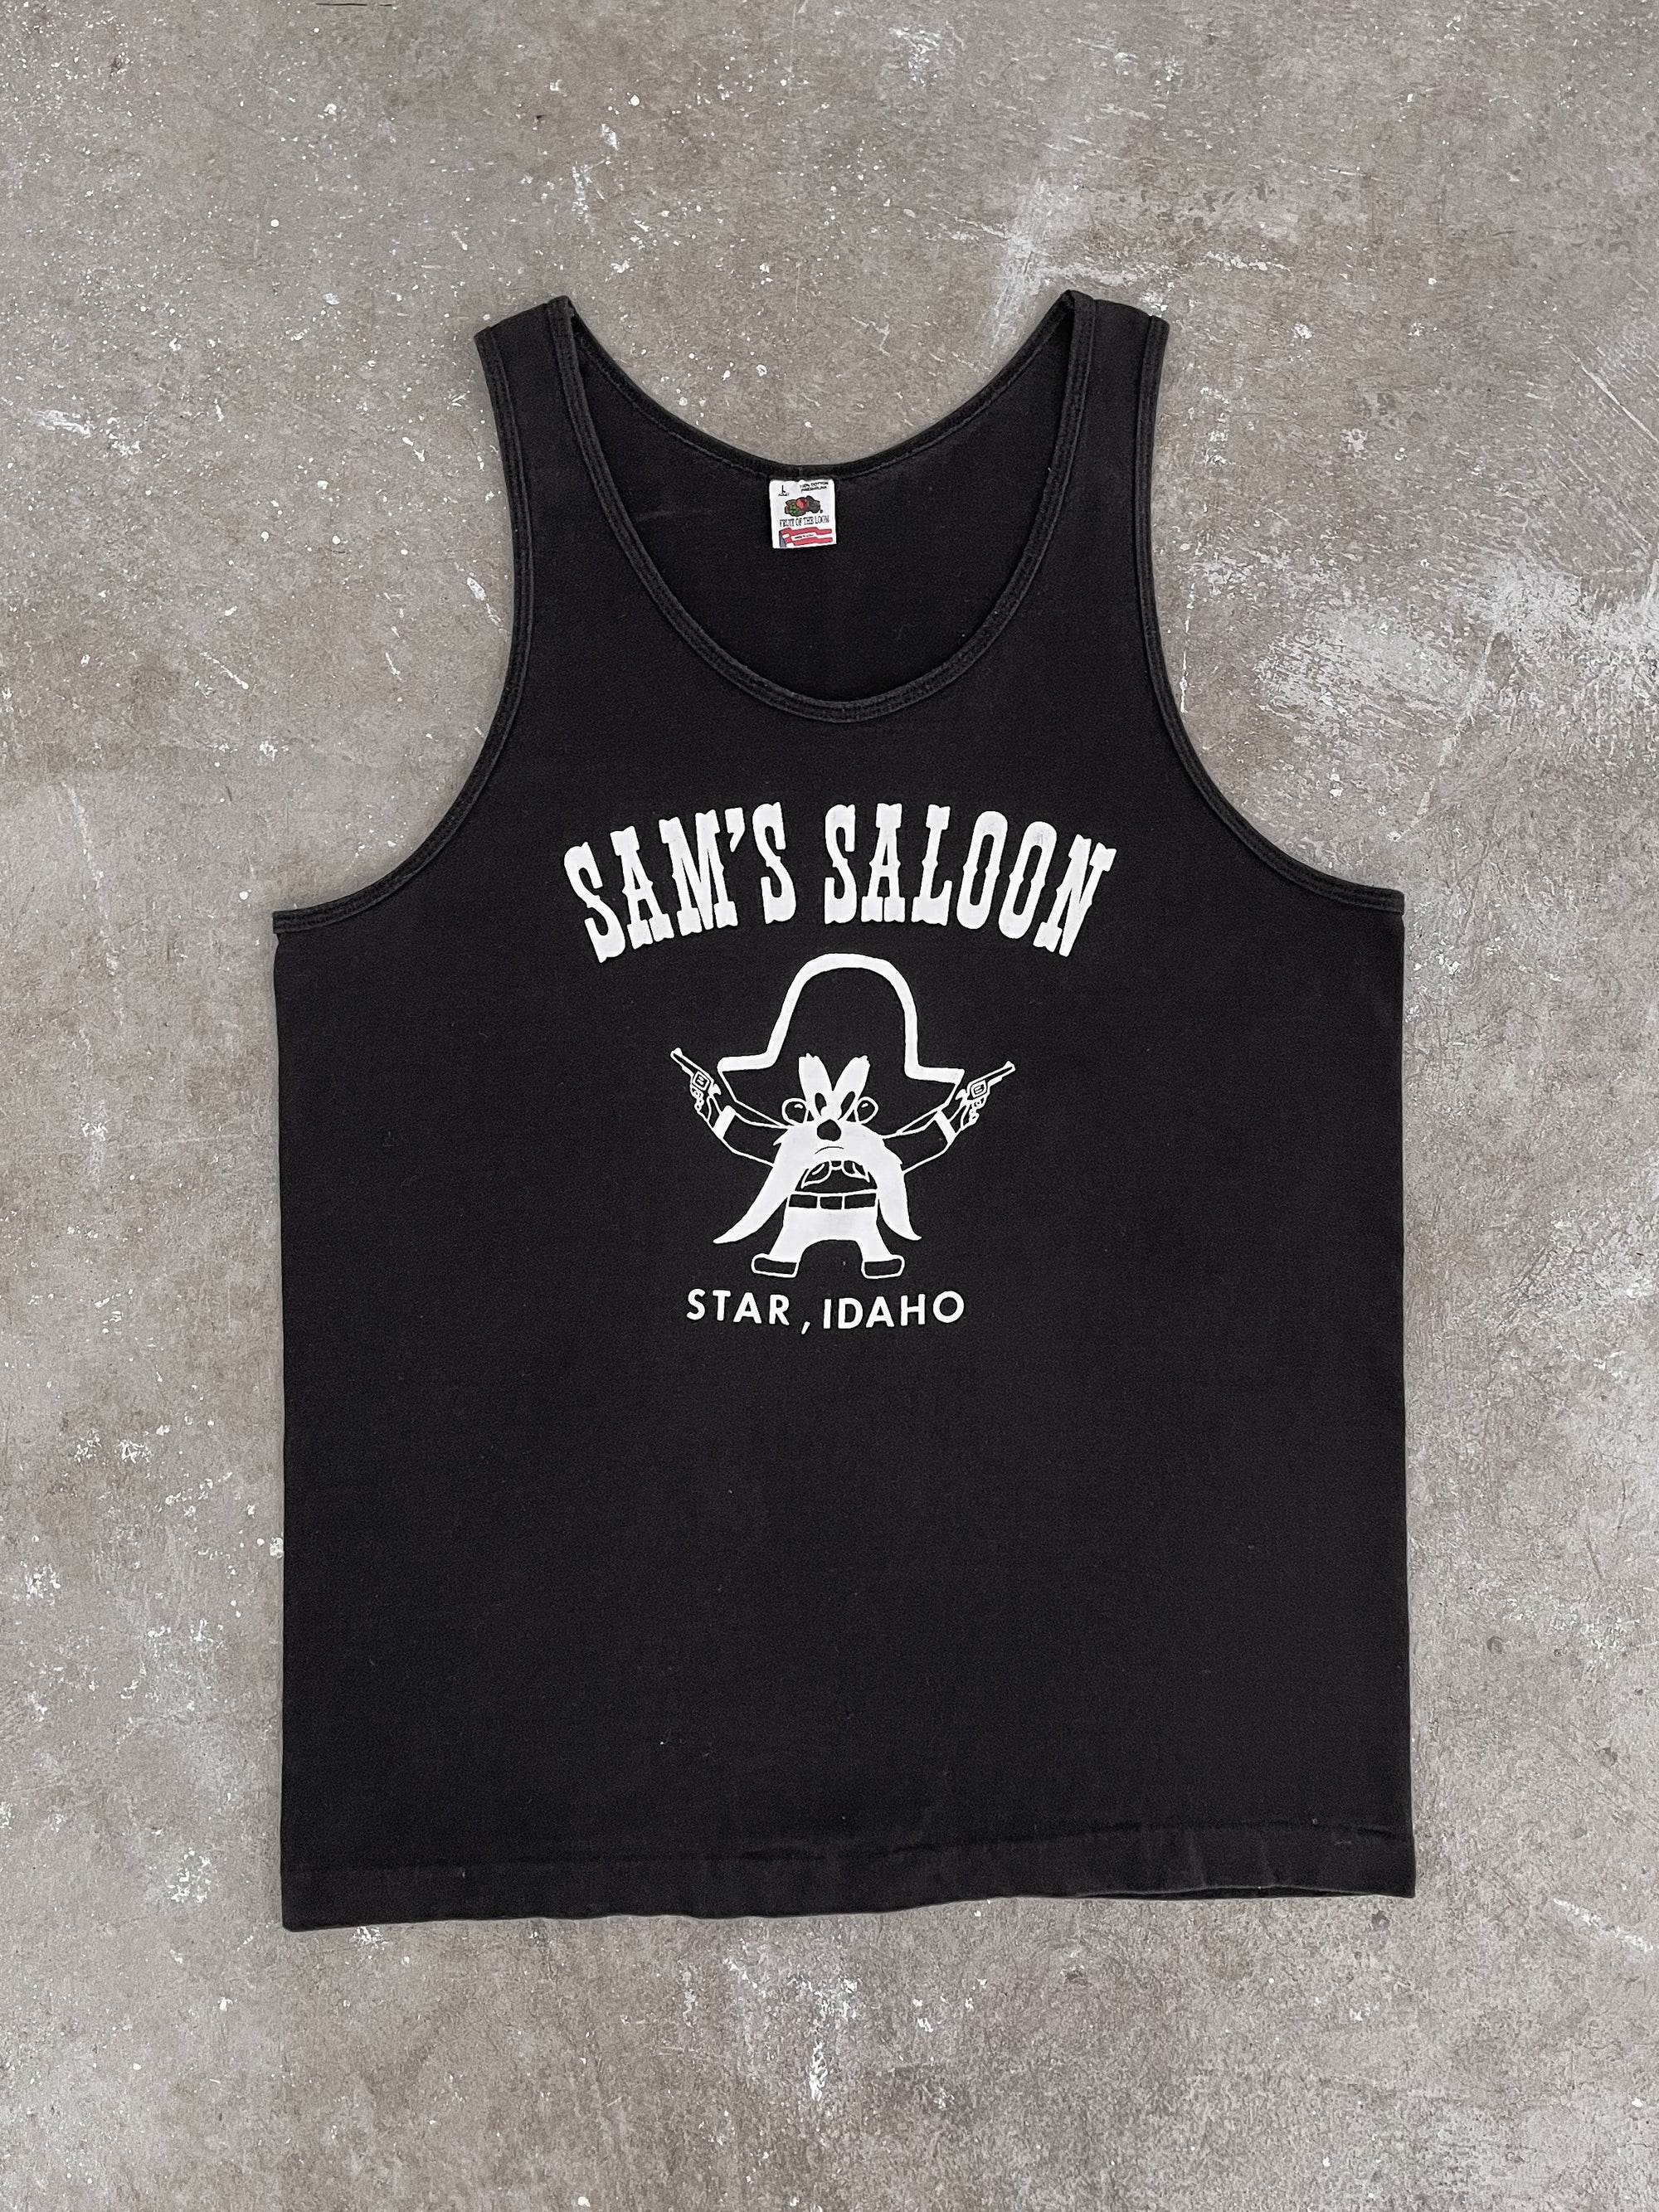 1990s “Sam’s Saloon” Tank Top (L)